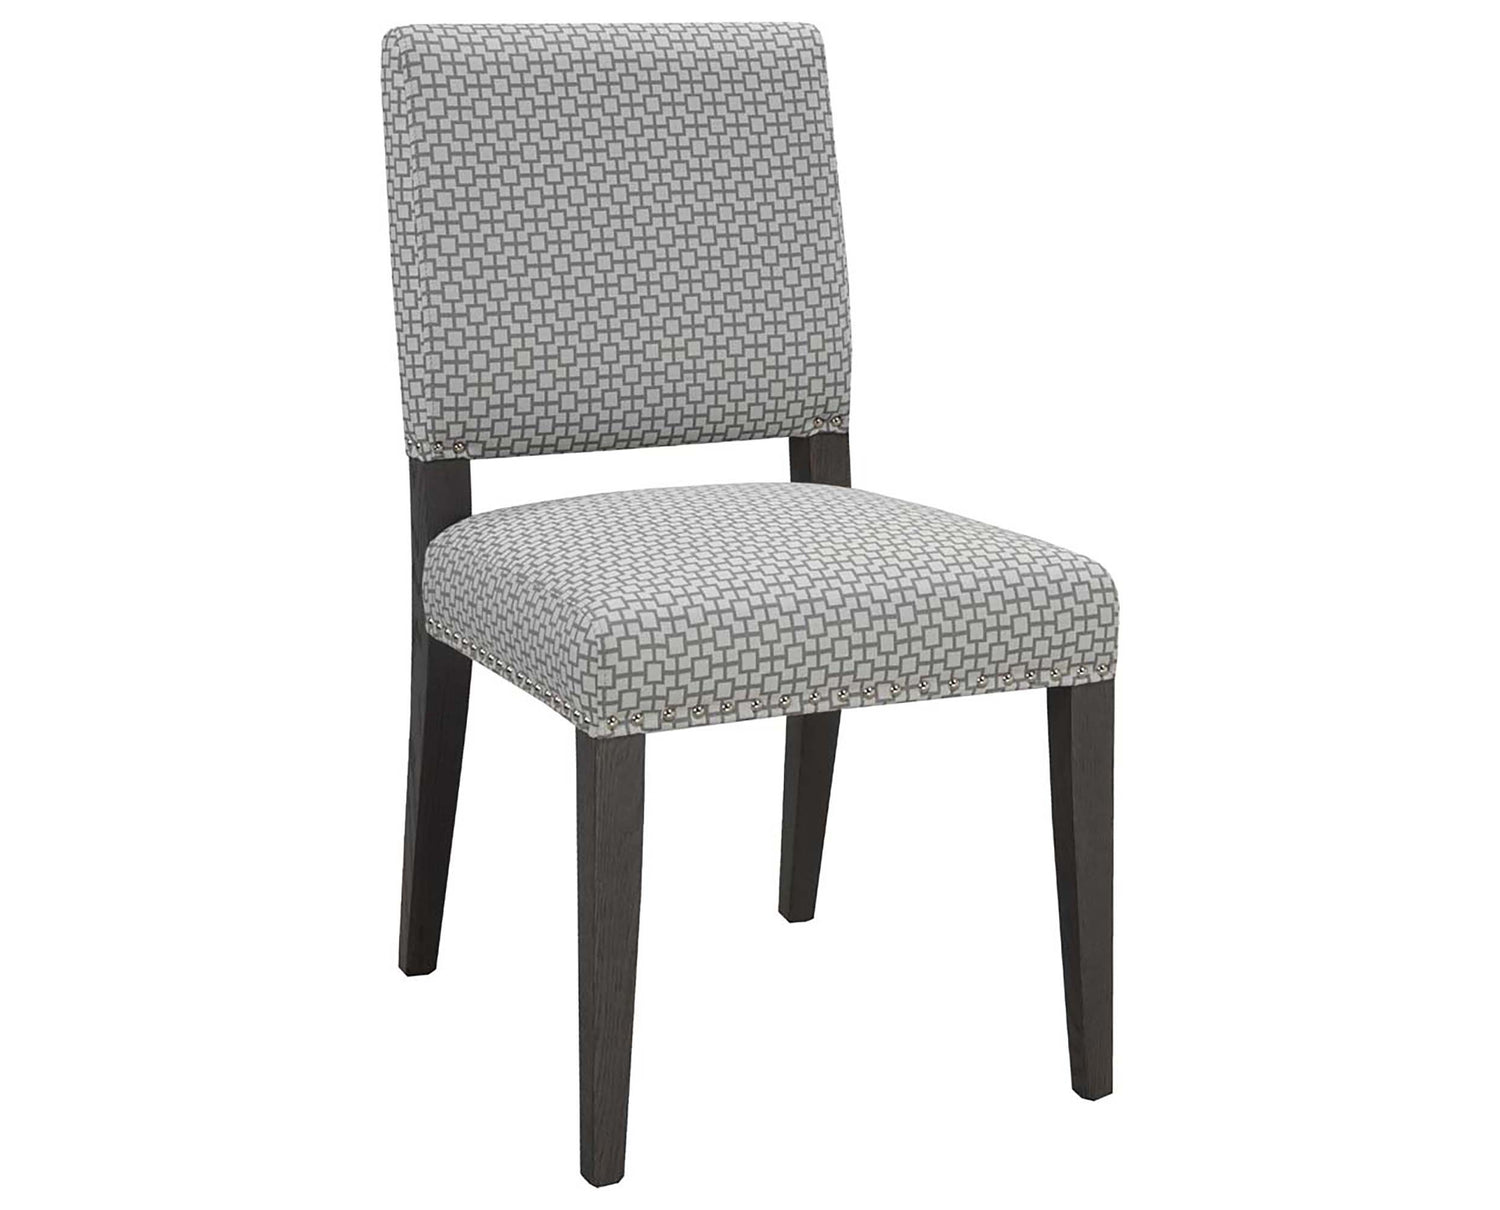 Chair as Shown | Cardinal Woodcraft Salwick Dining Chair - Copenhagen | Valley Ridge Furniture